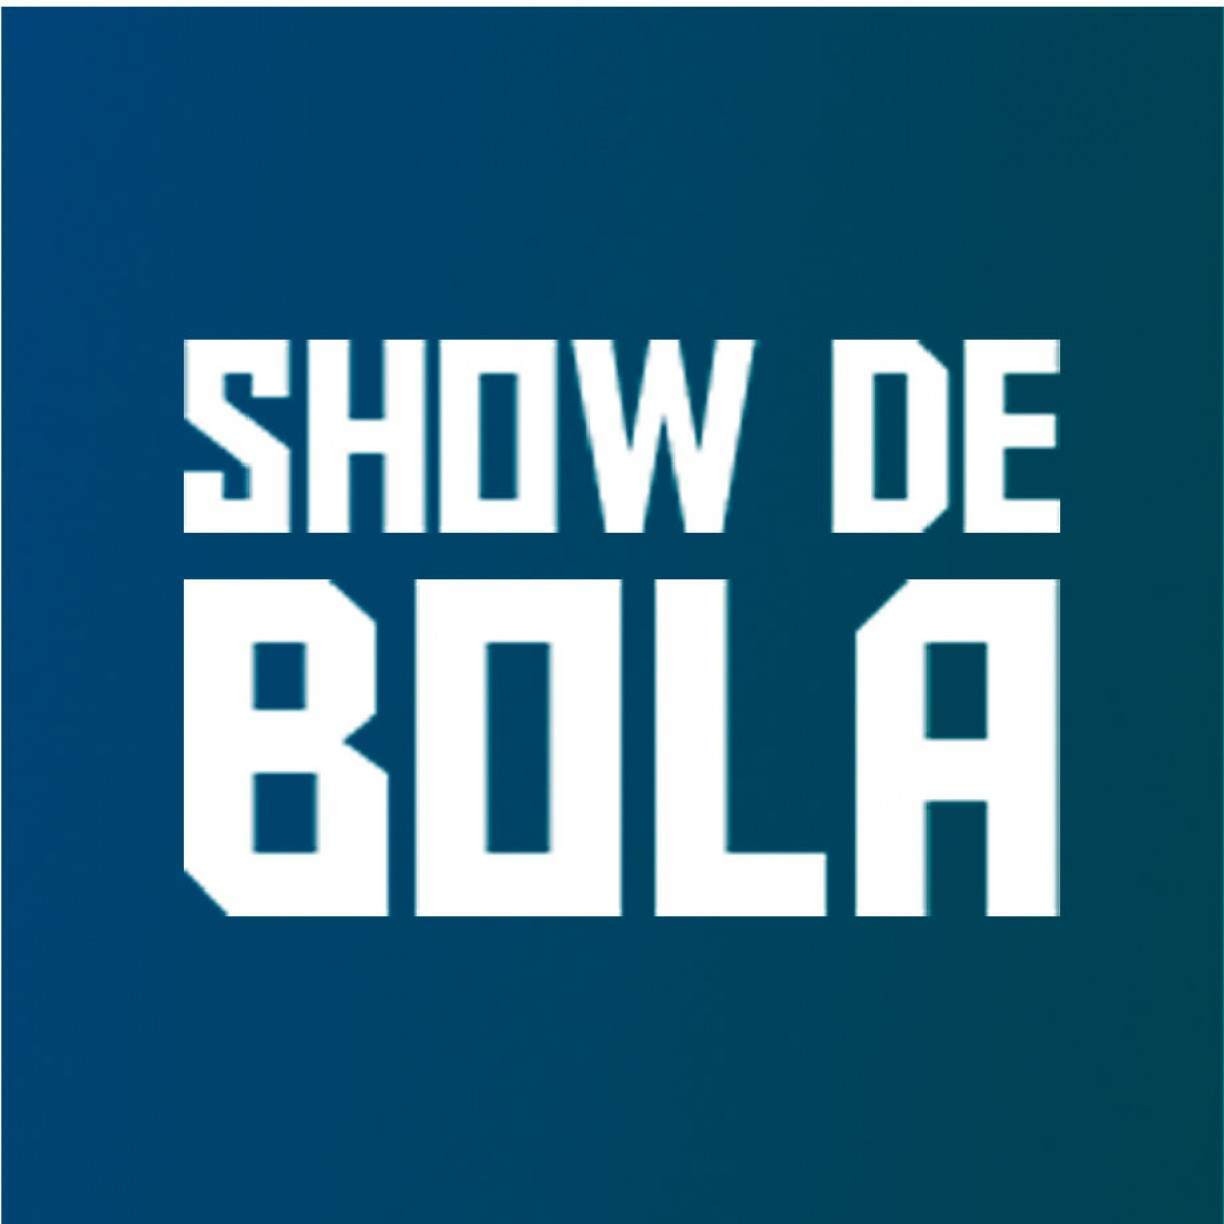 Show de Bola